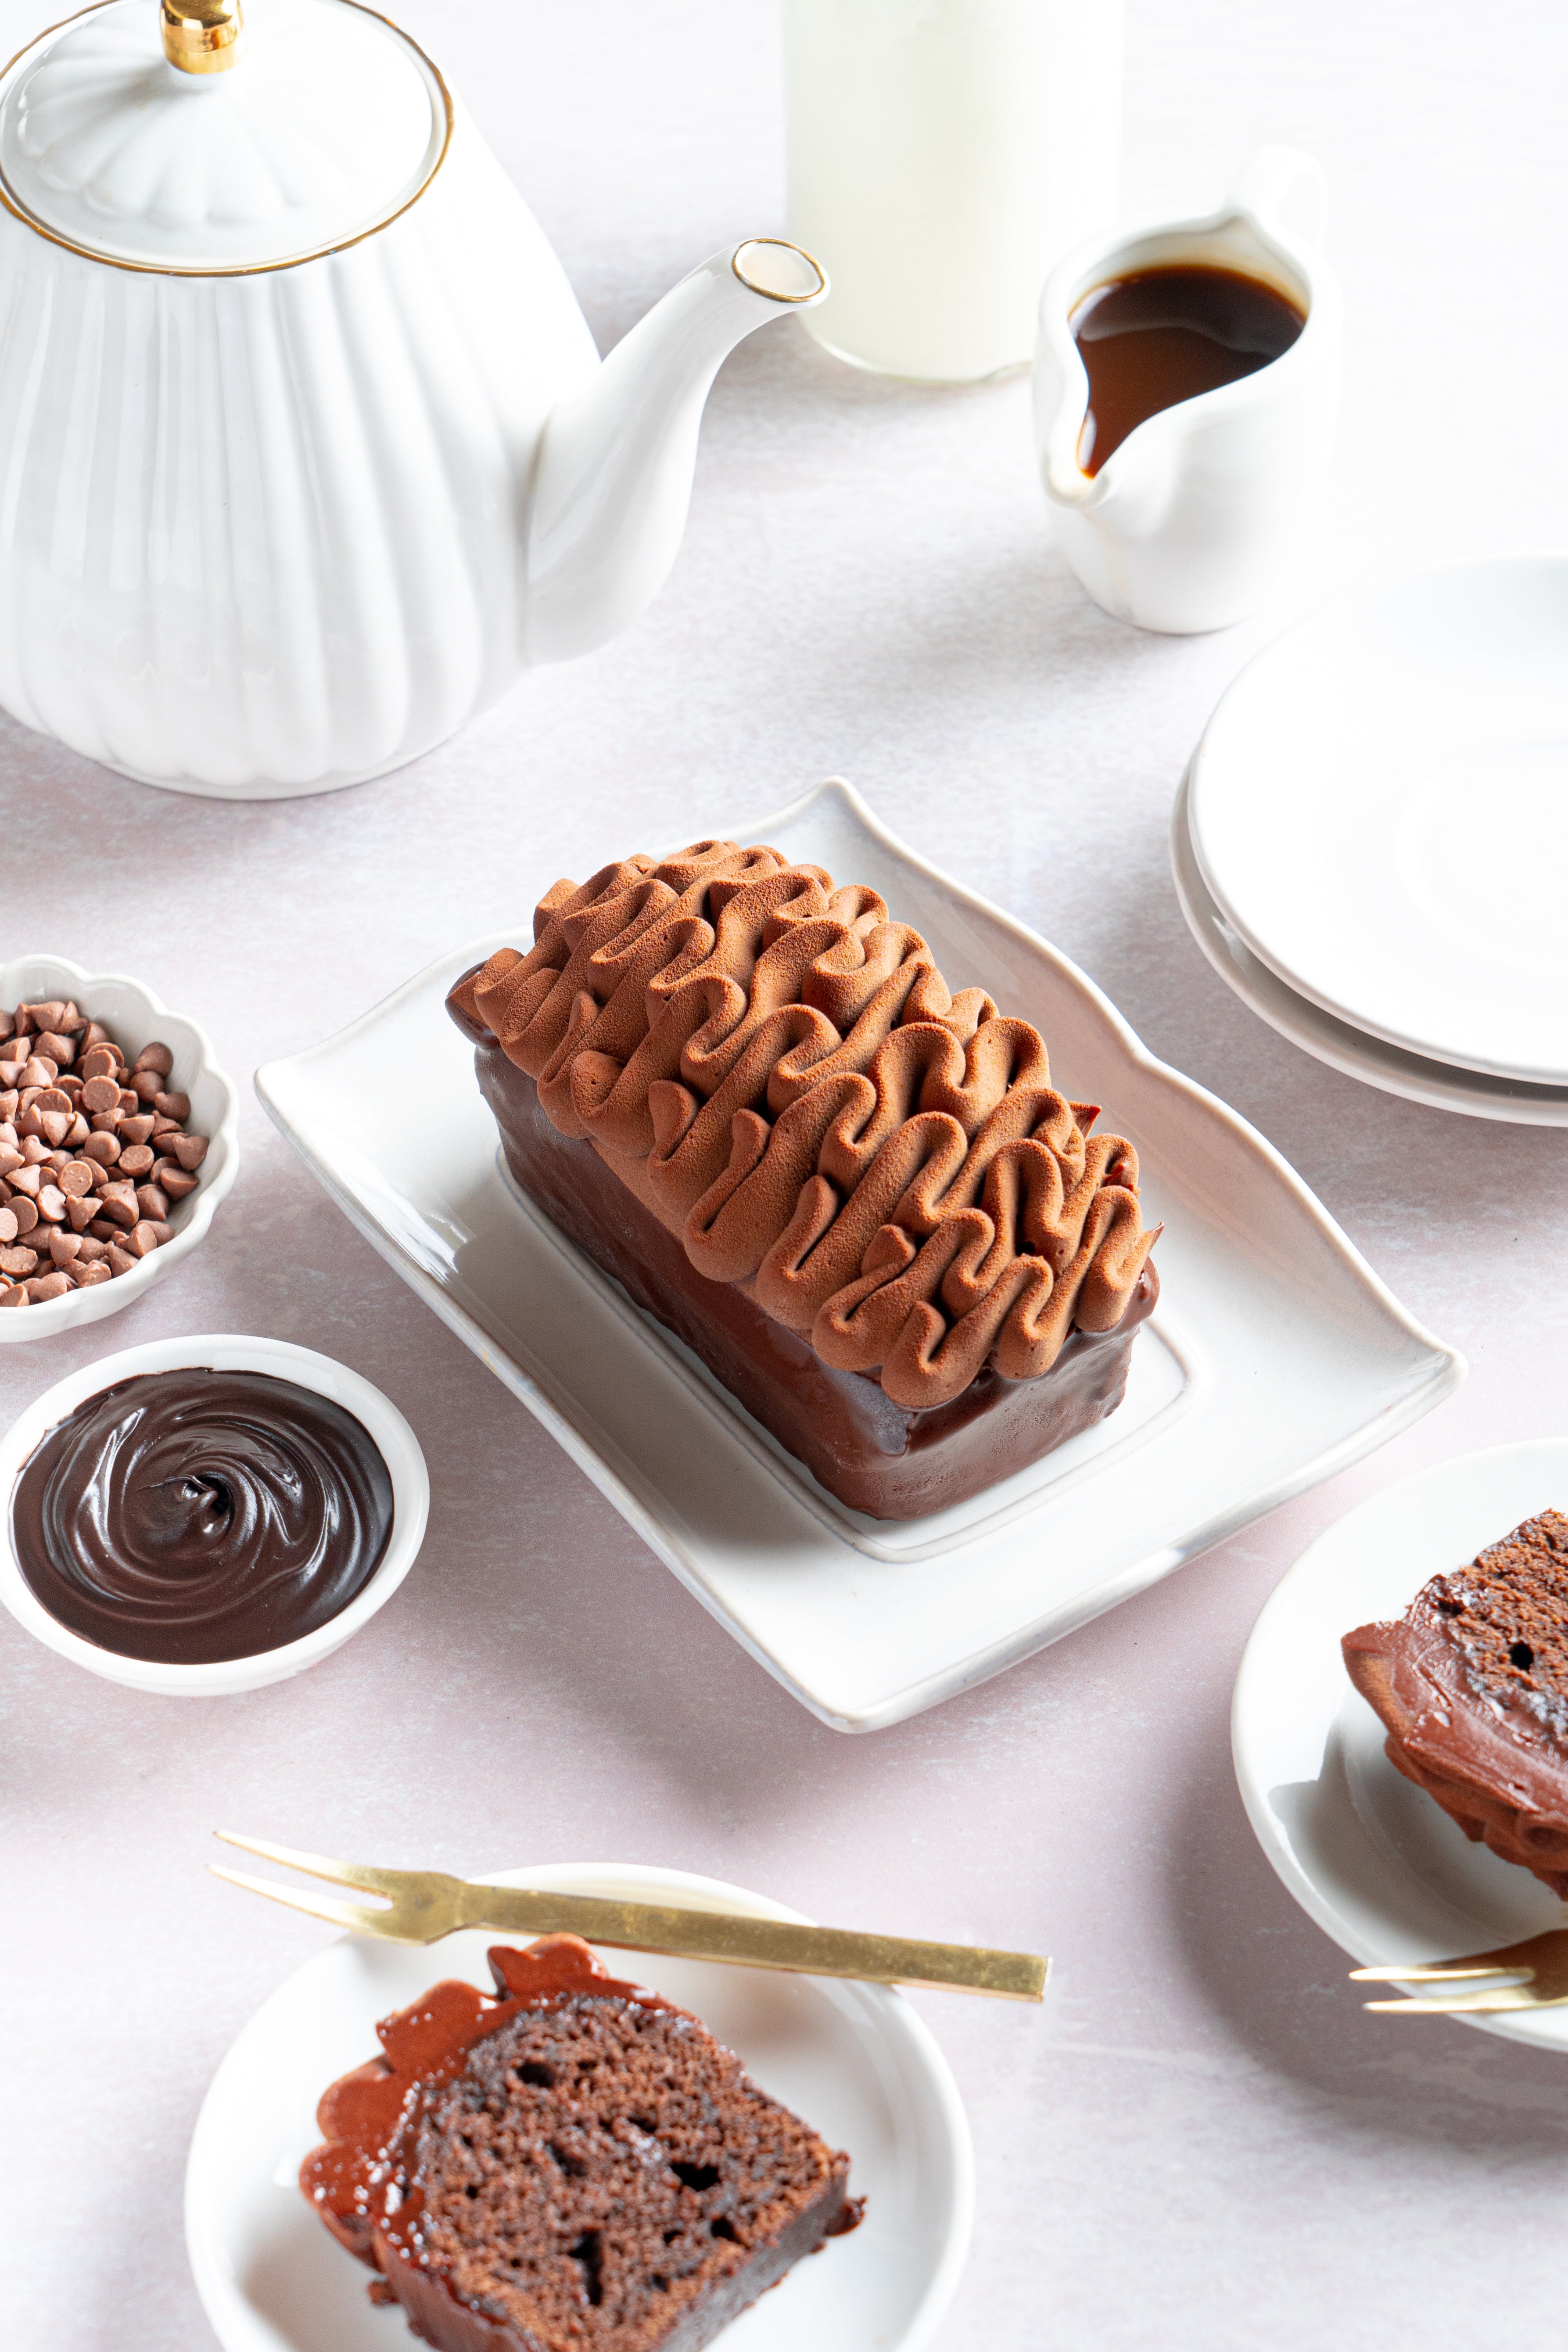 Matt Adler's Chocolate Orange Fudge Cake | How To Cake It – HOW TO CAKE IT